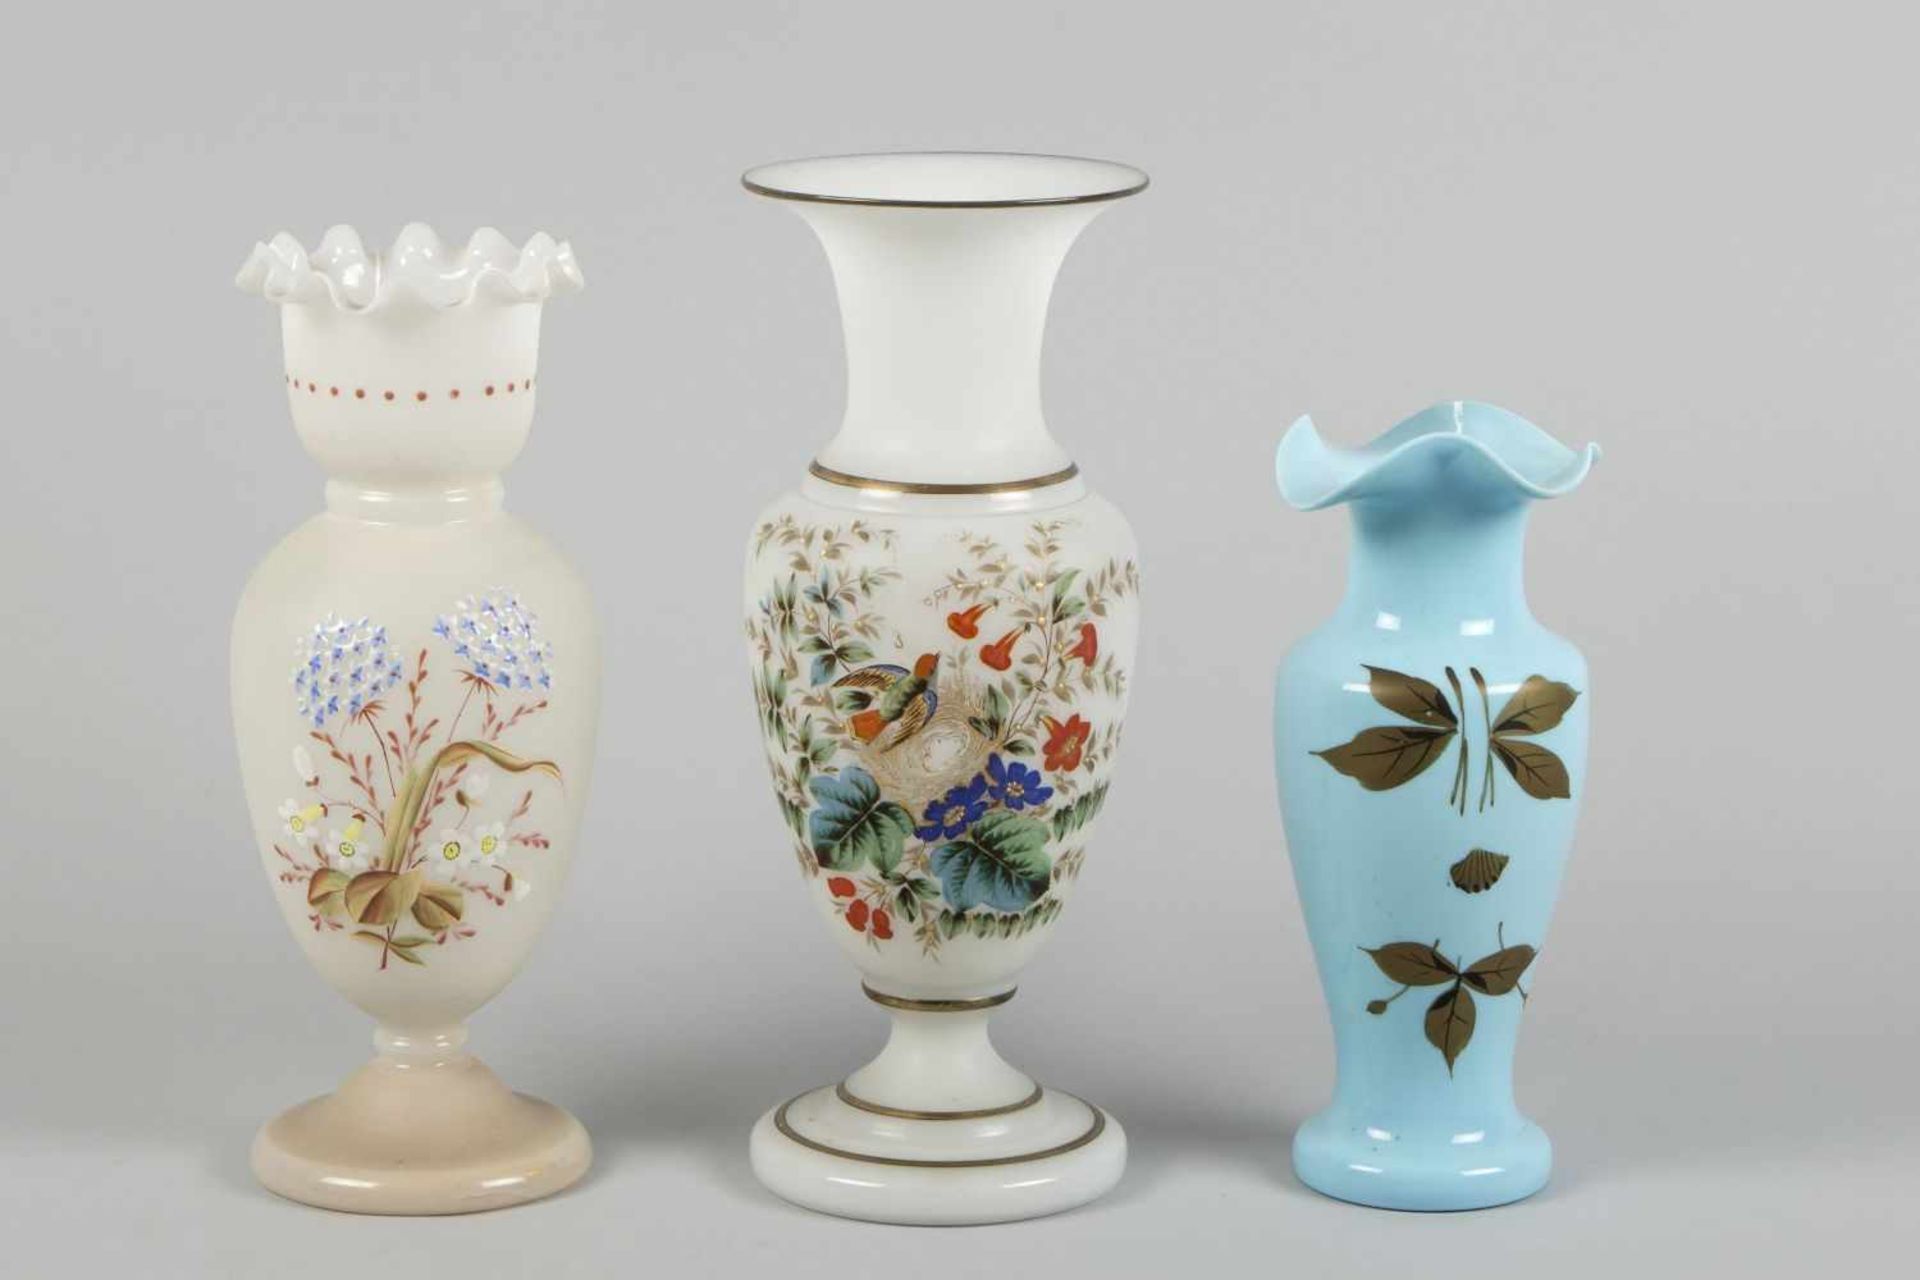 Drei VasenOpalinglas und hellblaues Glas. Versch. Formen und Dekore. Polychrome florale Bemalung.